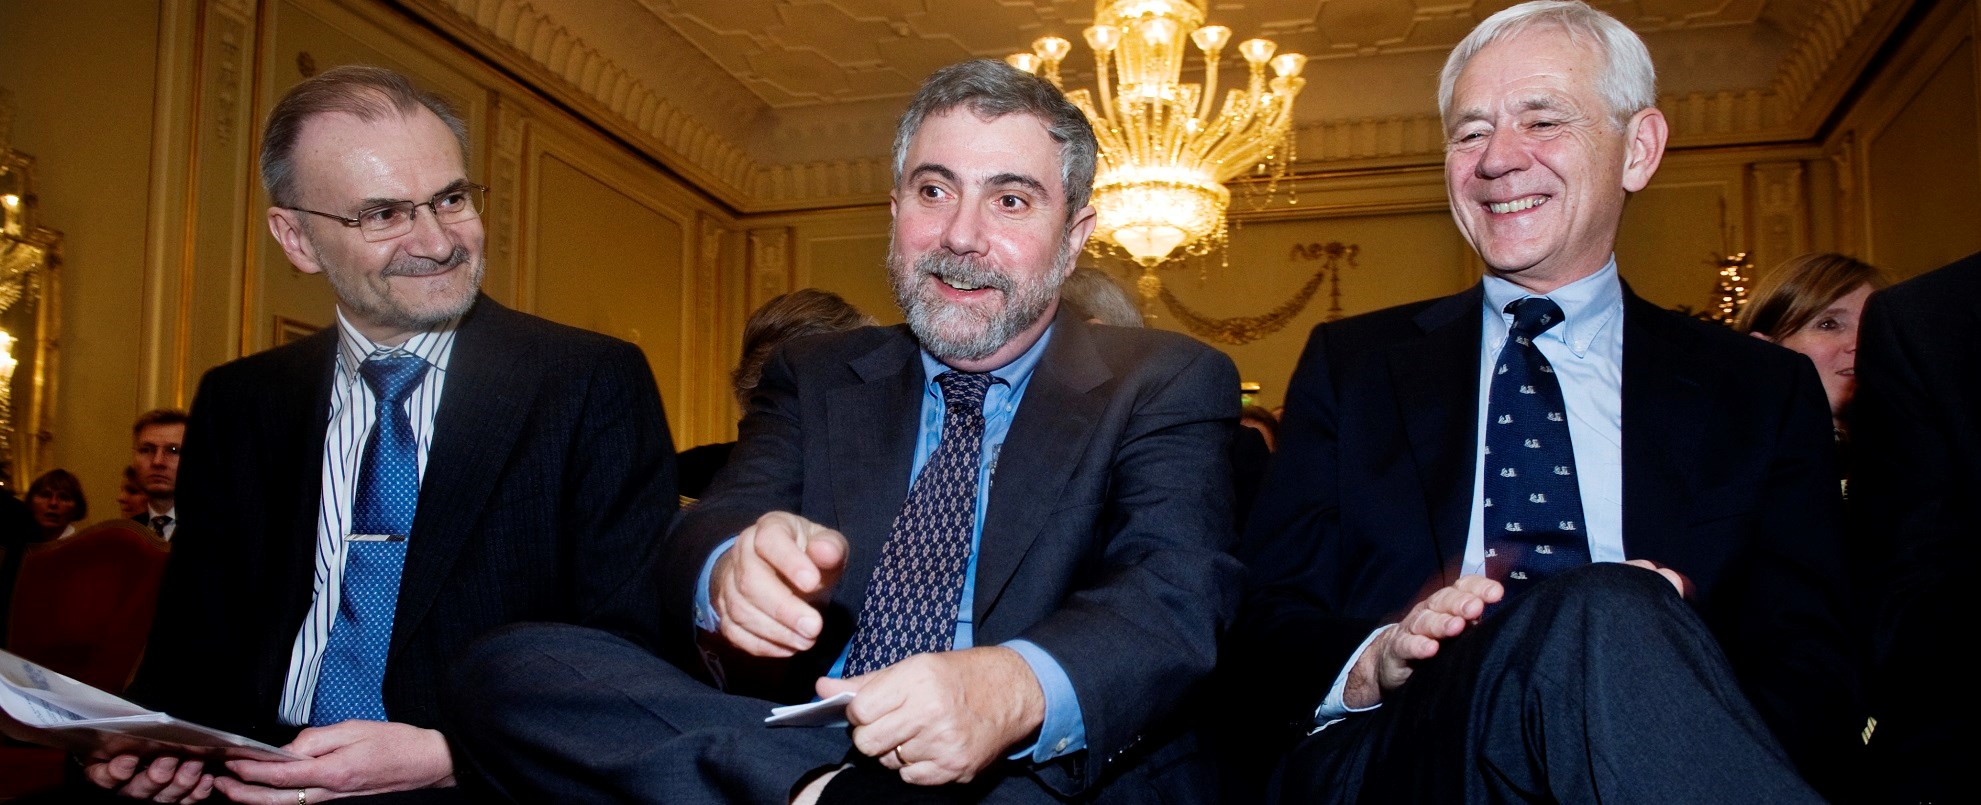 Der det typisk amerikanske ble storkonsern med verden som marked, ble det typisk europeiske på denne måten små og mellomstore bedrifter som dels supplerer hverandre og dels konkurrerer – det som populært kalles næringsklynger. Foto: Økonomiprofessor Knut Anton Mork, nobelprisvinner Paul Krugman og NHH-professor Victor Norman på en konferanse i Oslo i 2008. 